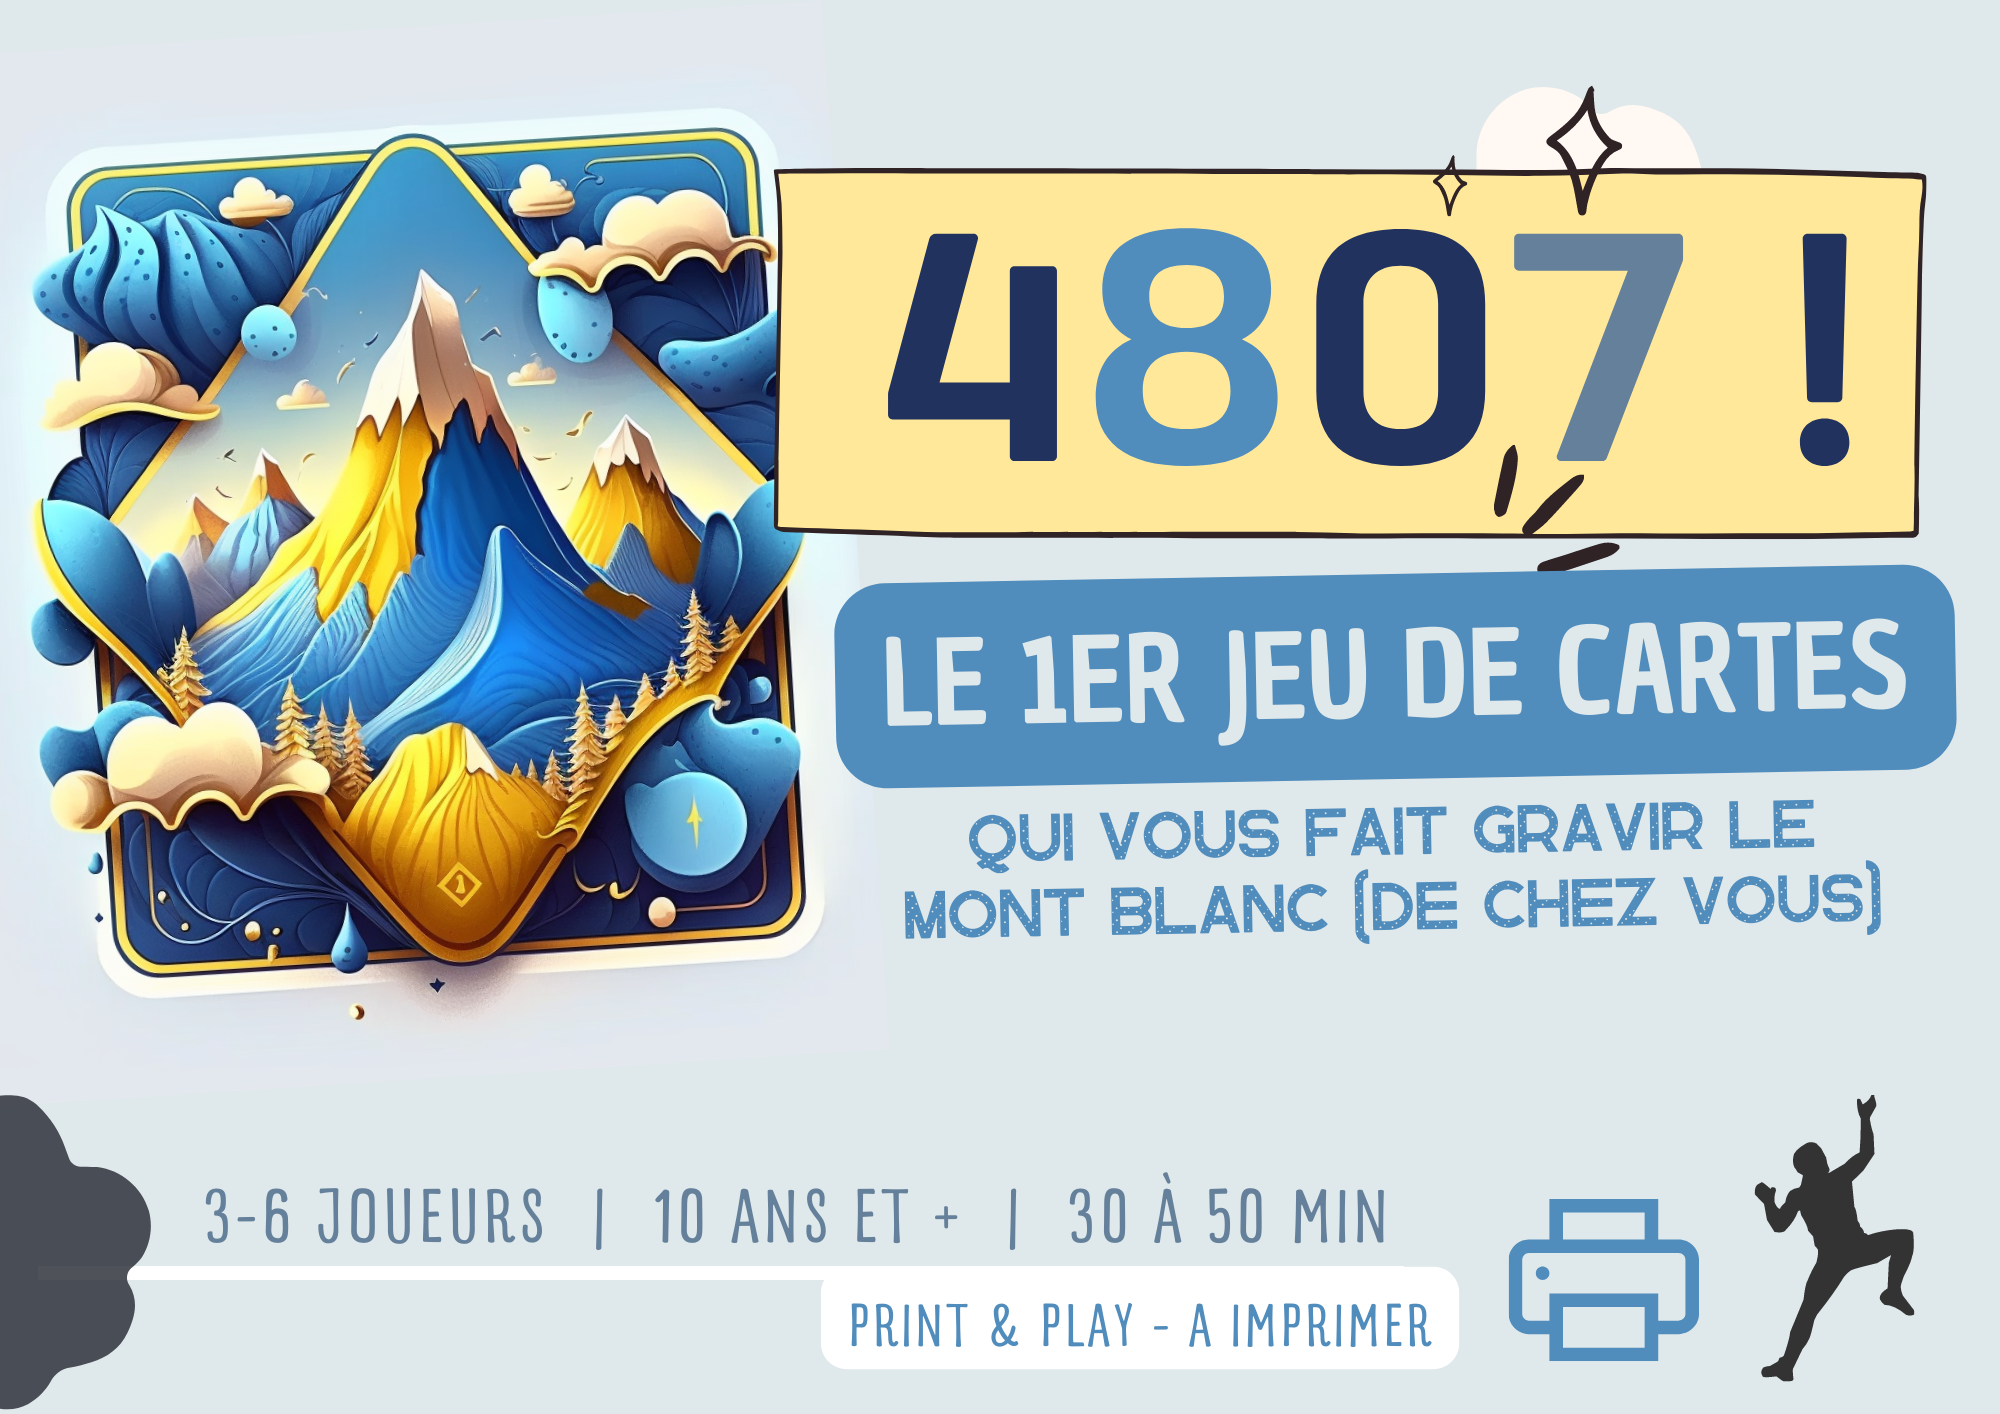 Téléchargez gratuitement “4807” : le premier jeu slow tourisme 100% alpin, 100% imprimable de chez vous !